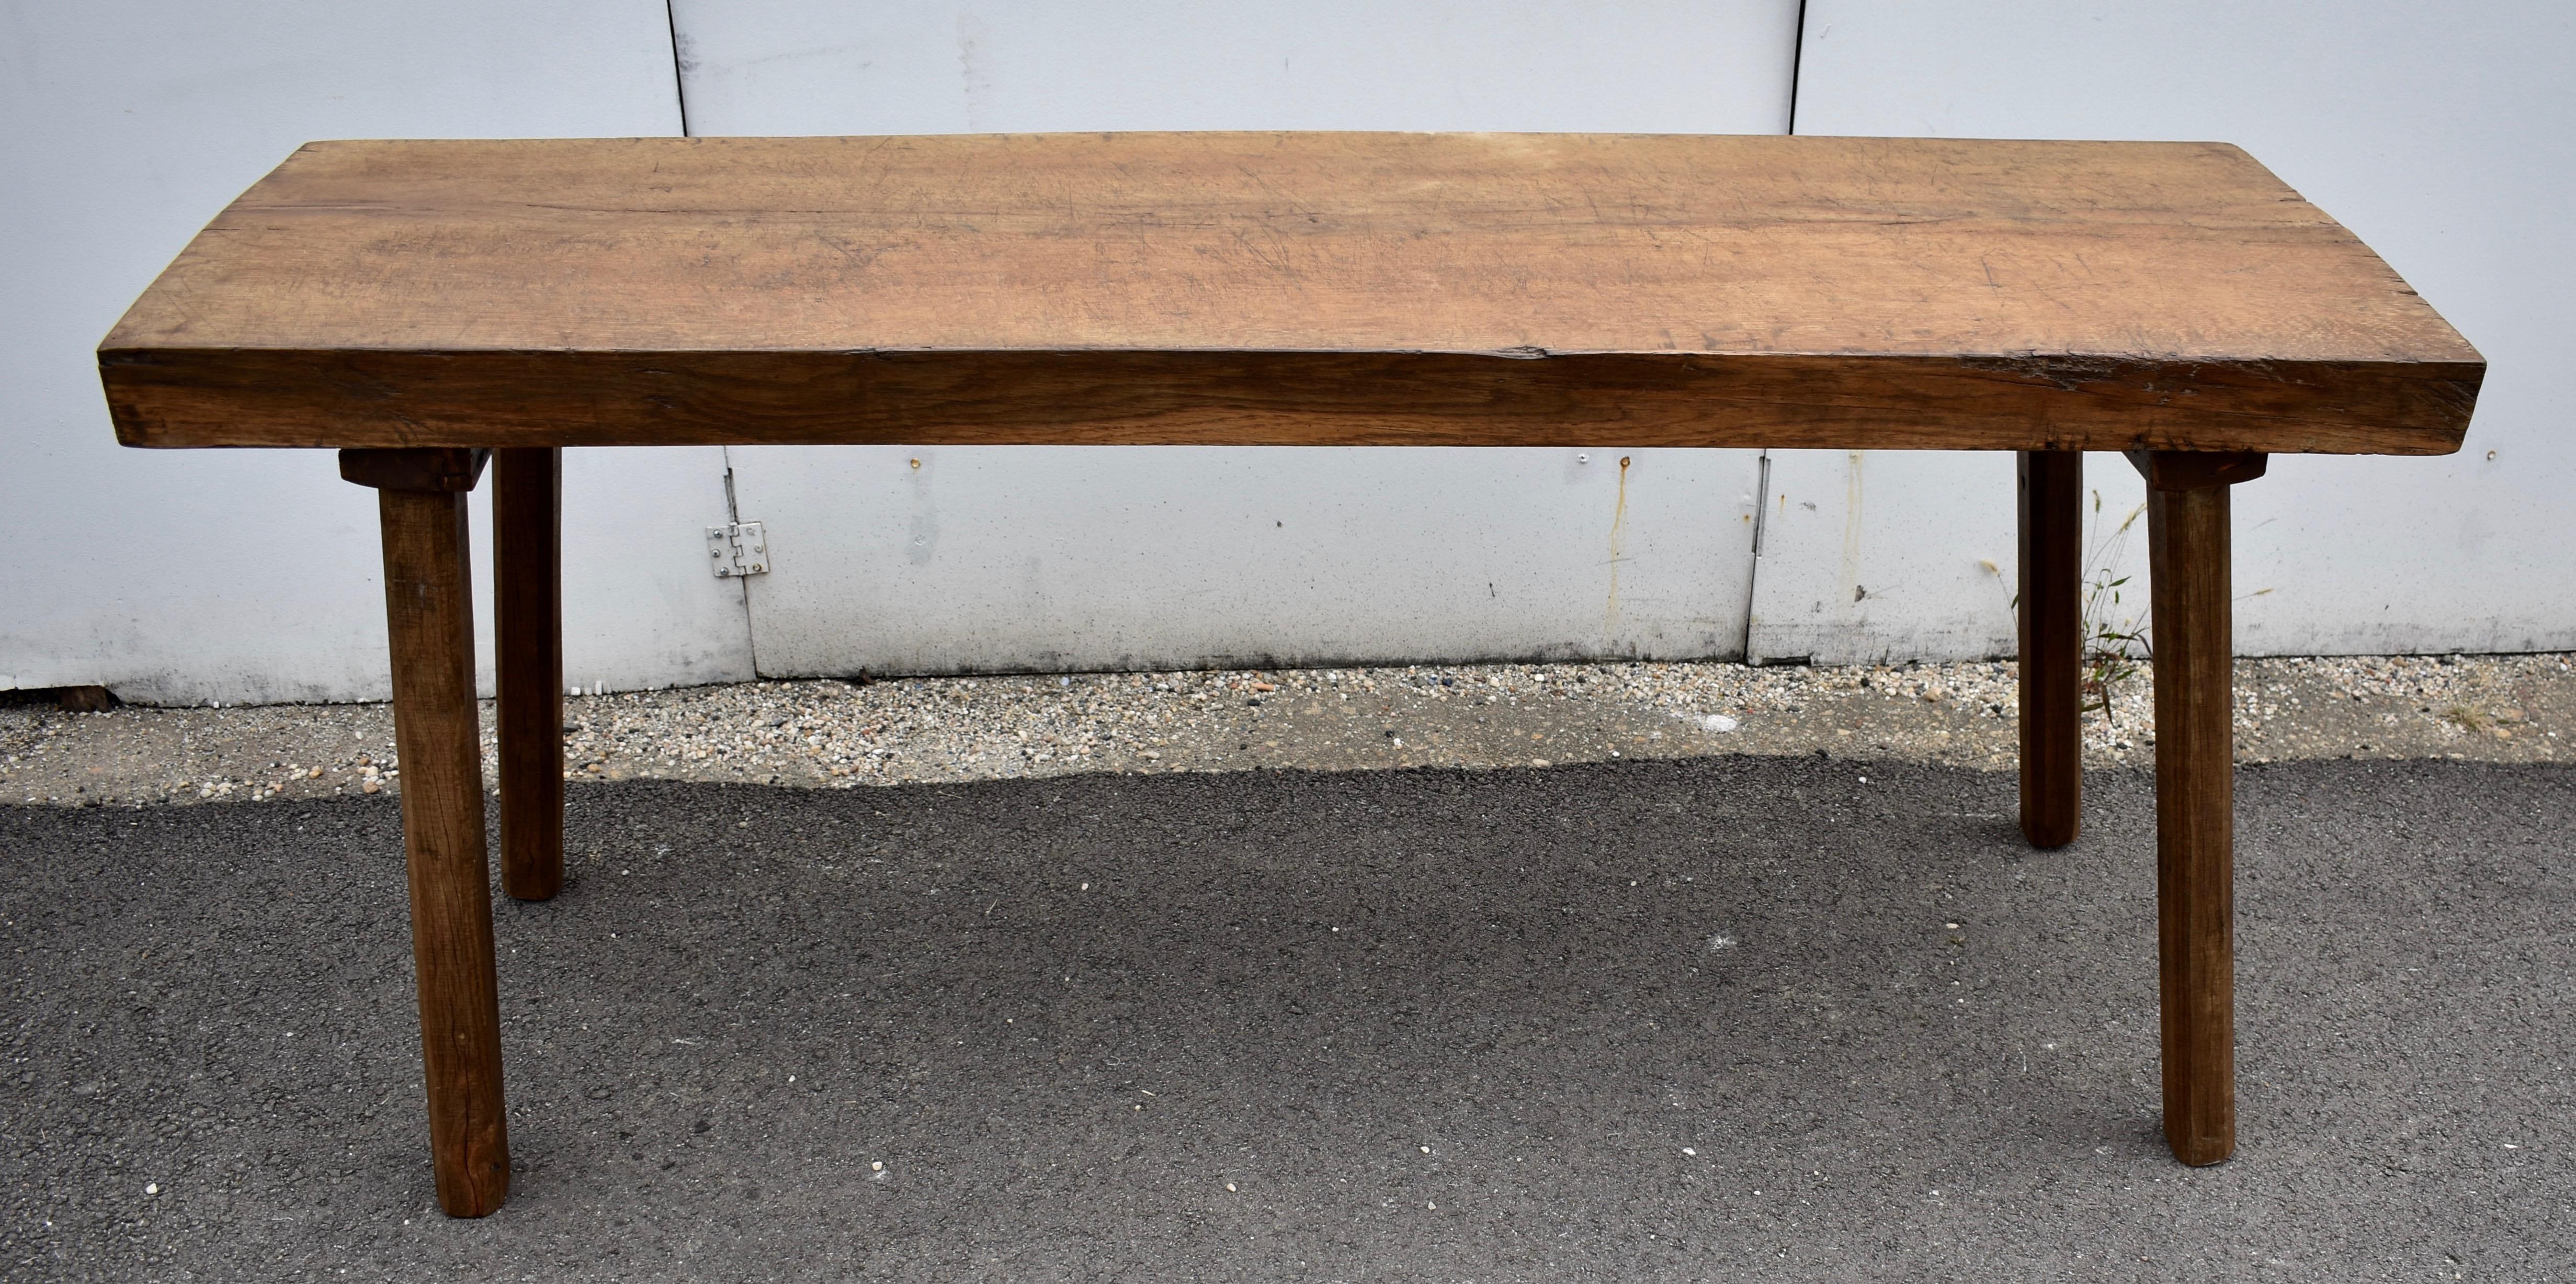 Dies ist ein extrem schwerer Pig Bench Table.  Der Deckel ist eine einzige Eichenplatte, die fast sechs Fuß lang und über drei Zoll dick ist.  Um ein Aufspalten zu verhindern, sind an beiden Enden hochbelastbare Eisenklammern tief in die